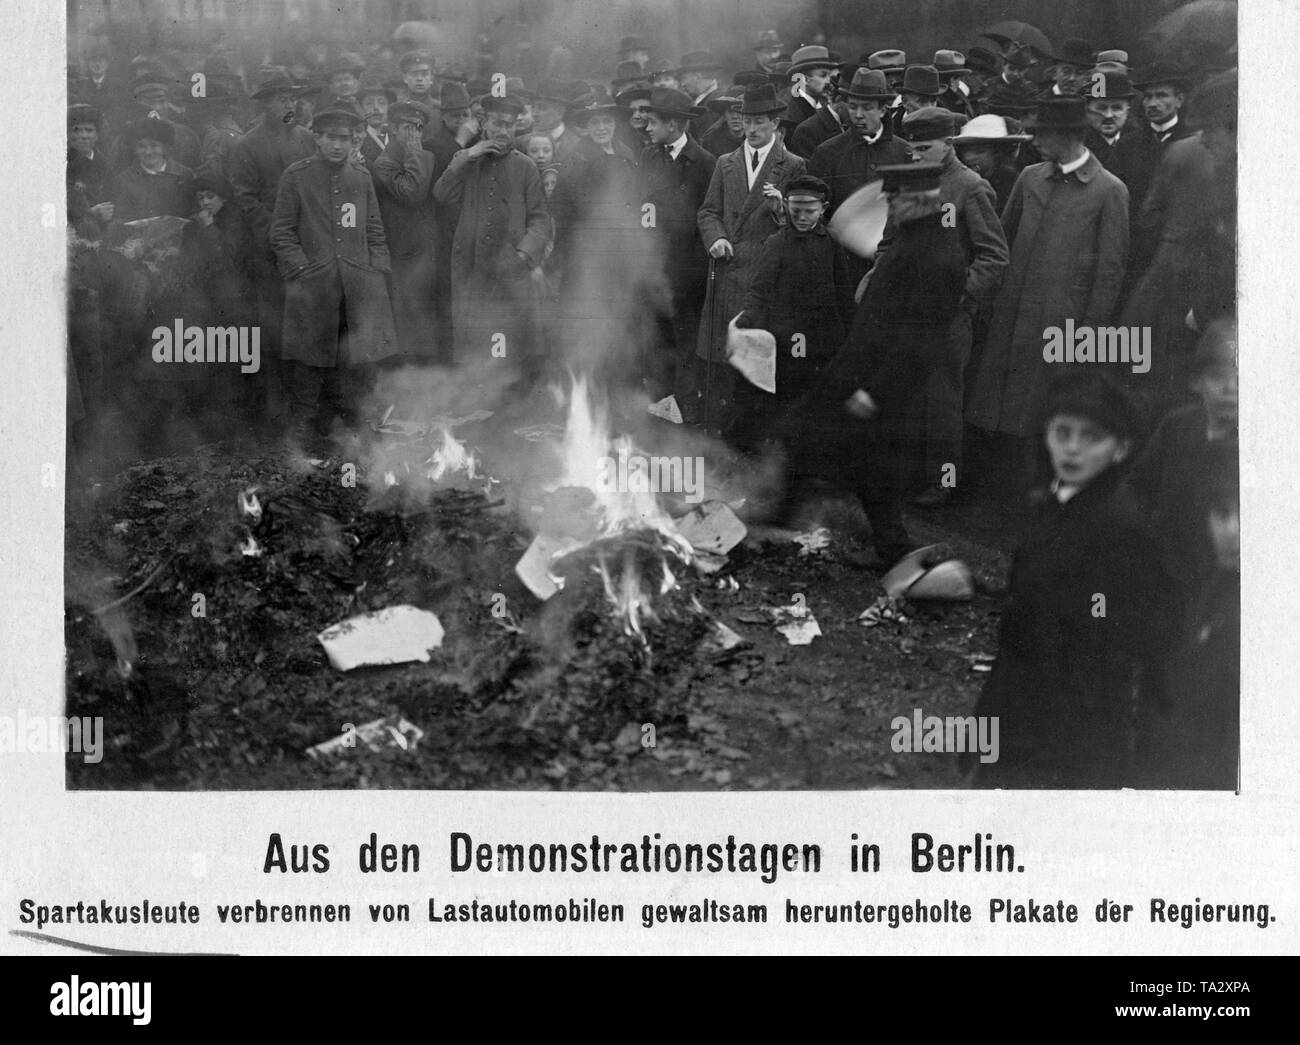 Spartakisten brennen Poster der Regierung. Sie hatte diese zuvor von Lastwagen durchgeführt im Laufe des Januar aufstand. Stockfoto